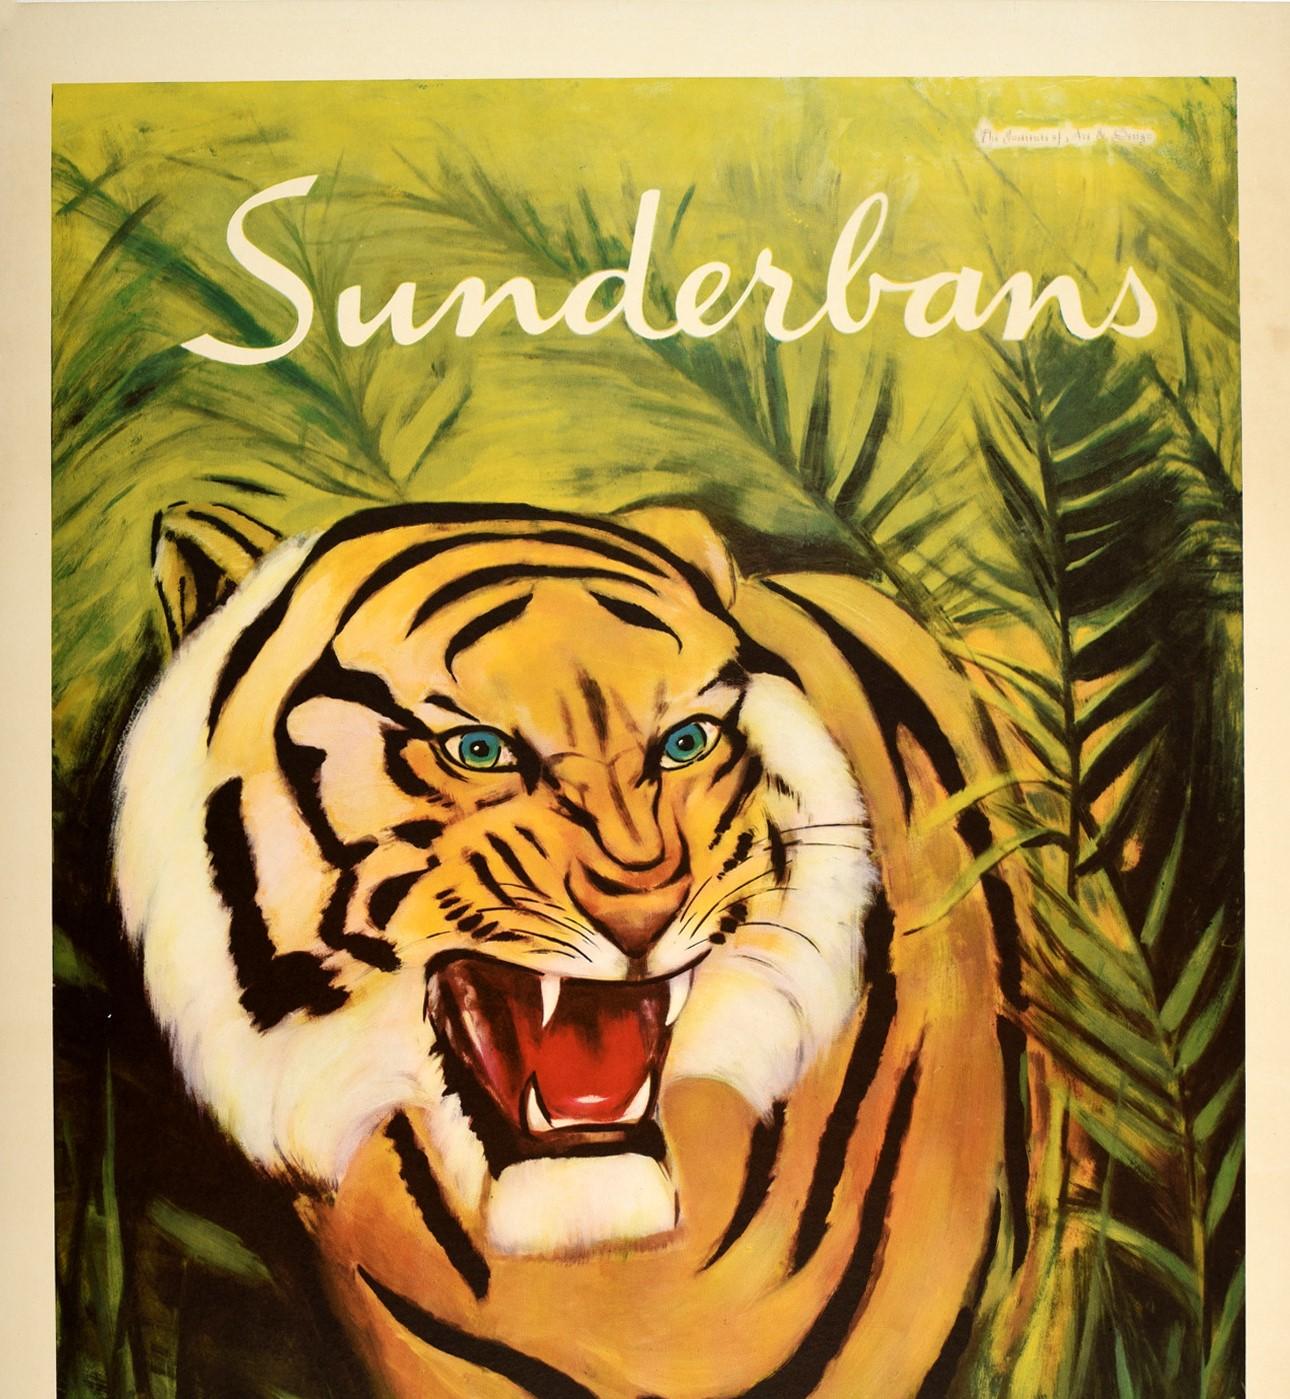 Affiche de voyage vintage originale pour la région de Sunderbans, au Pakistan, présentant une superbe image d'un tigre rugissant émergeant des broussailles de la jungle, avec le texte stylisé en blanc au-dessus et en jaune en dessous. Les Sundarbans